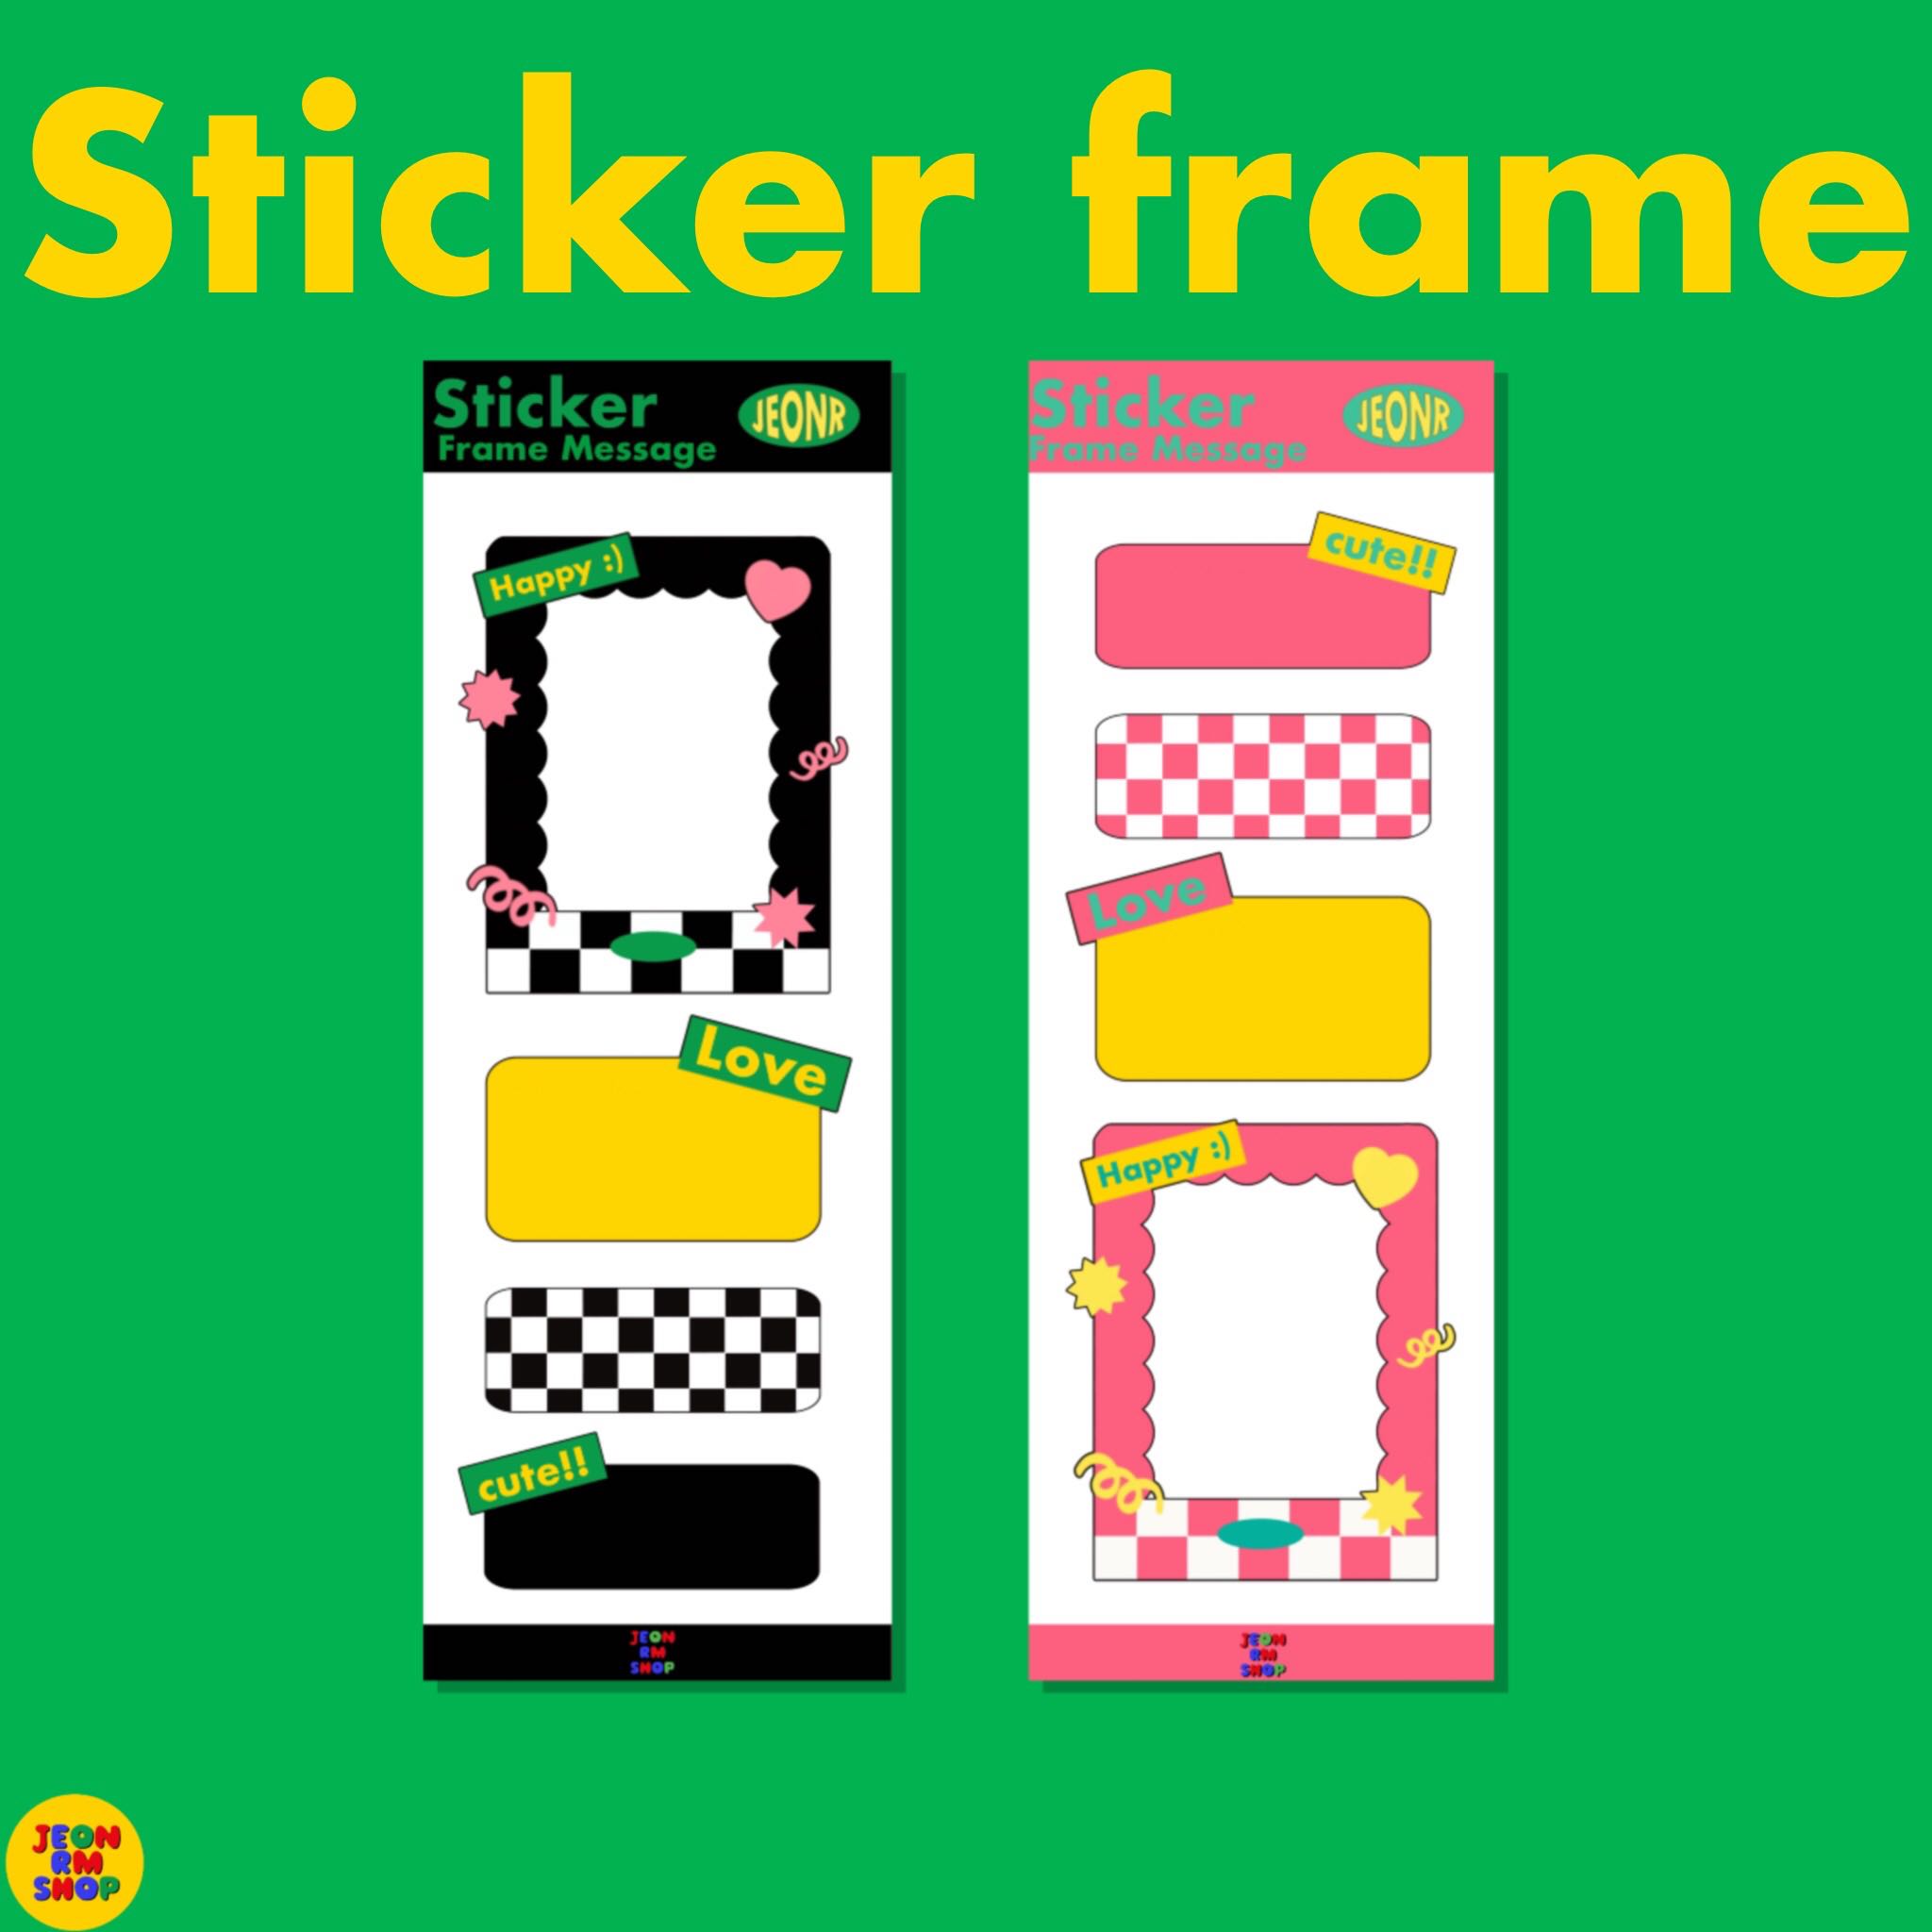 Sticker frame message